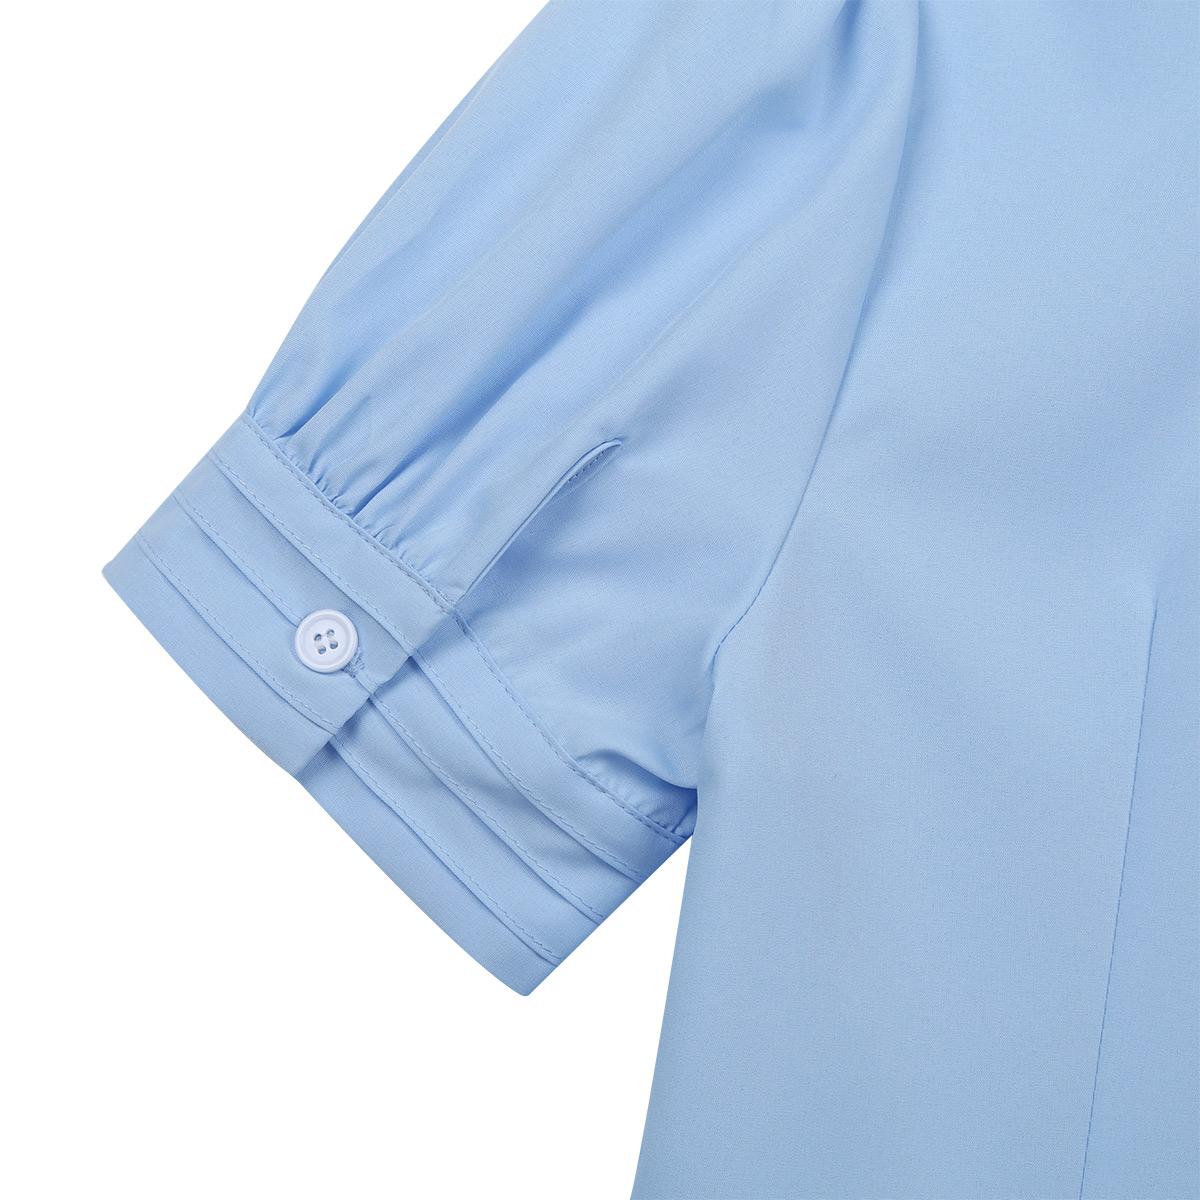 Изображение товара: Женская одежда iiniim, офисная блузка с отложным воротником и пуговицами с оборками, Повседневная рубашка для вечерние, деловая облегающая женская блузка